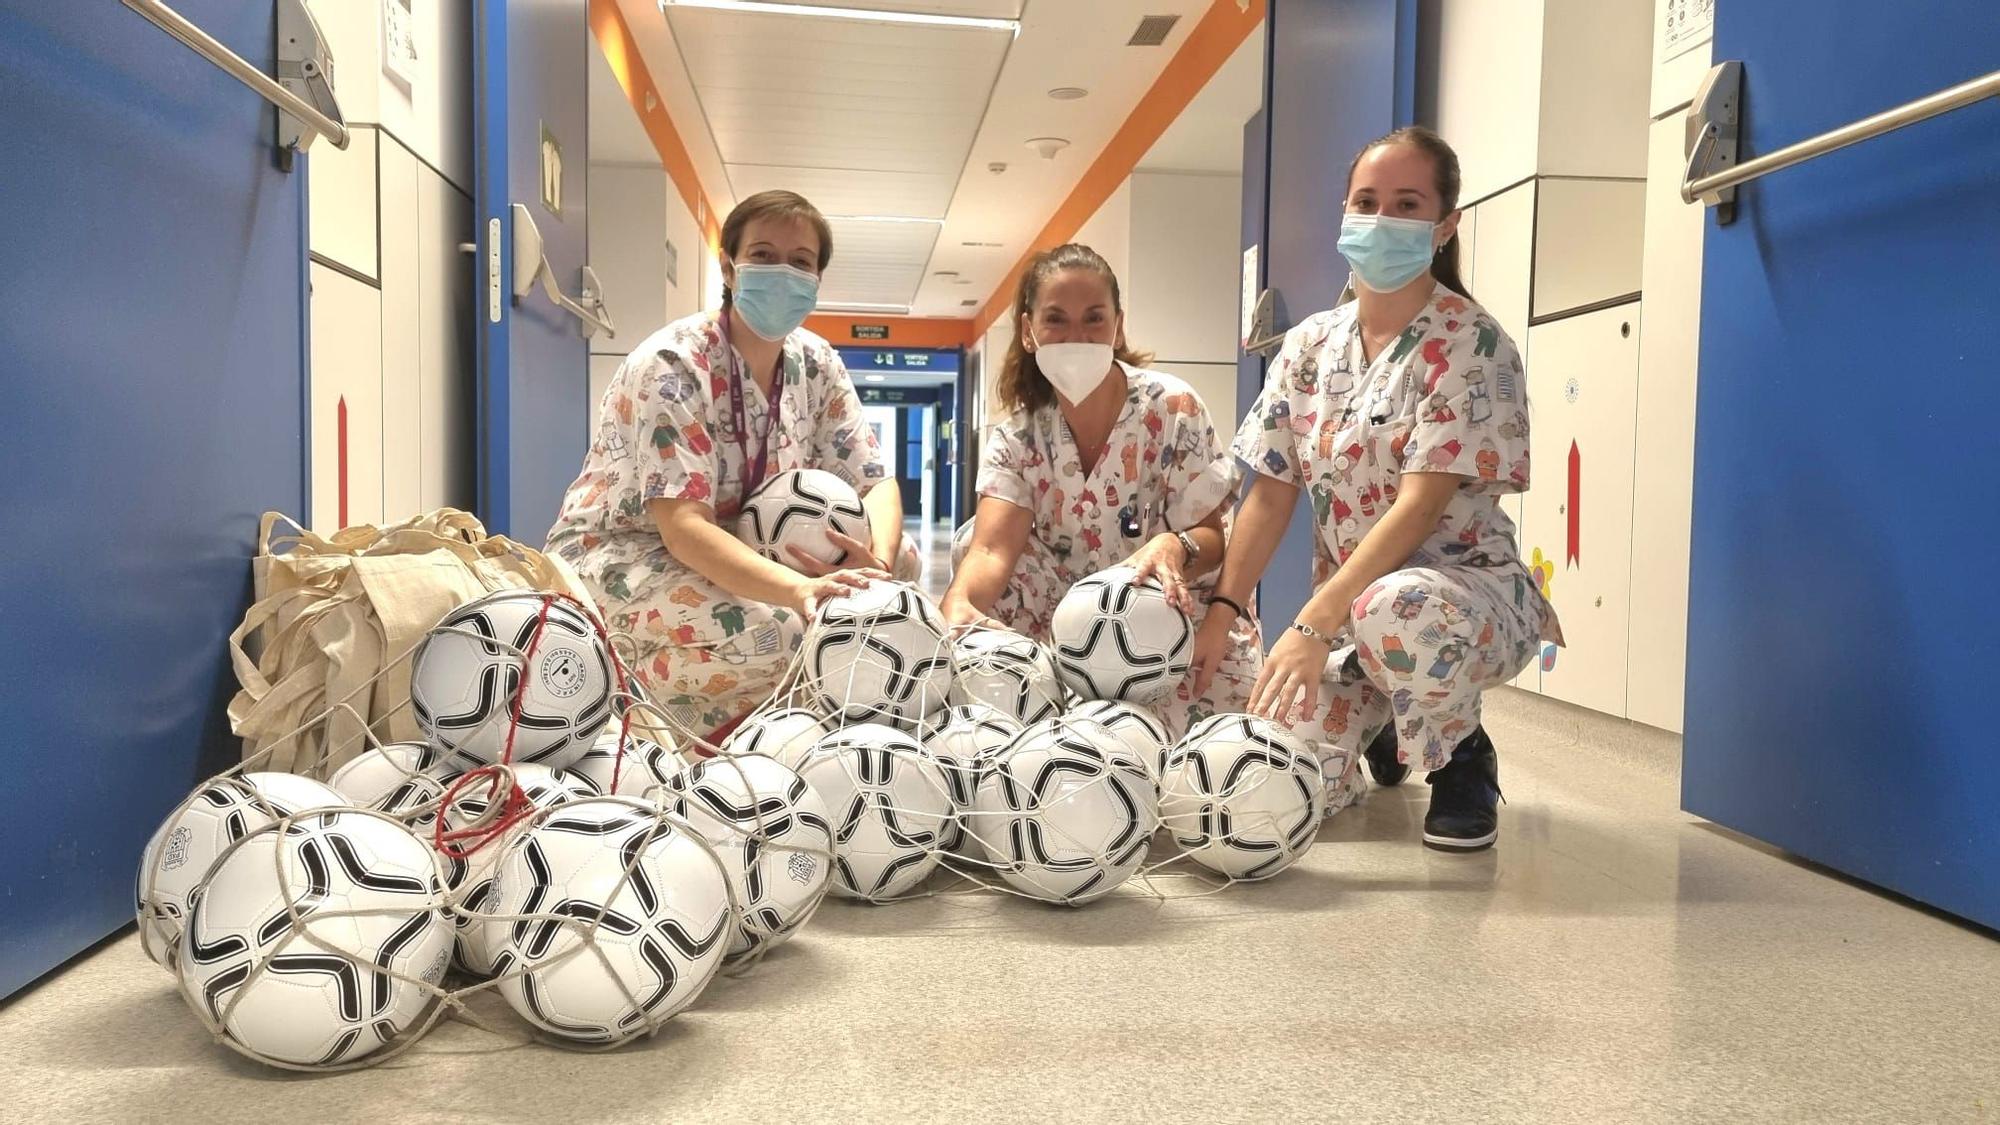 La Penya Deportiva entrega balones a los niños y niñas hospitalizados en Can Misses.